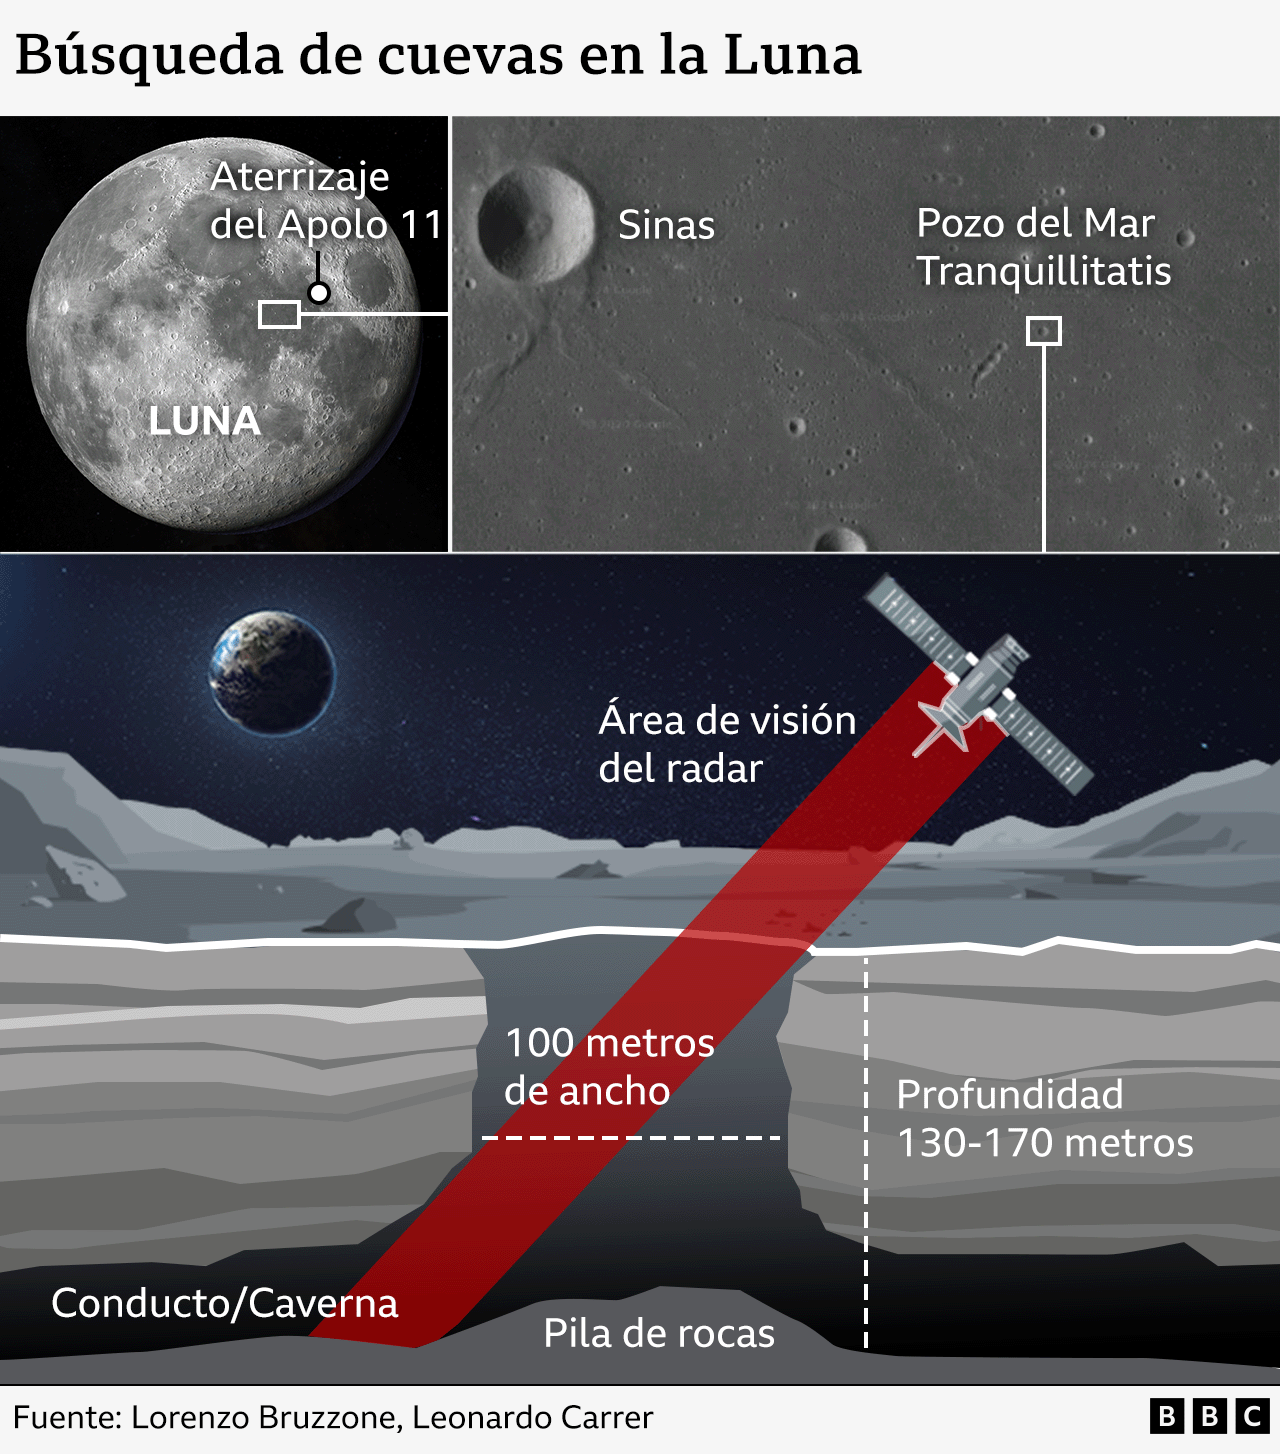 Gráfico sobre la búsqueda de cuevas en la luna